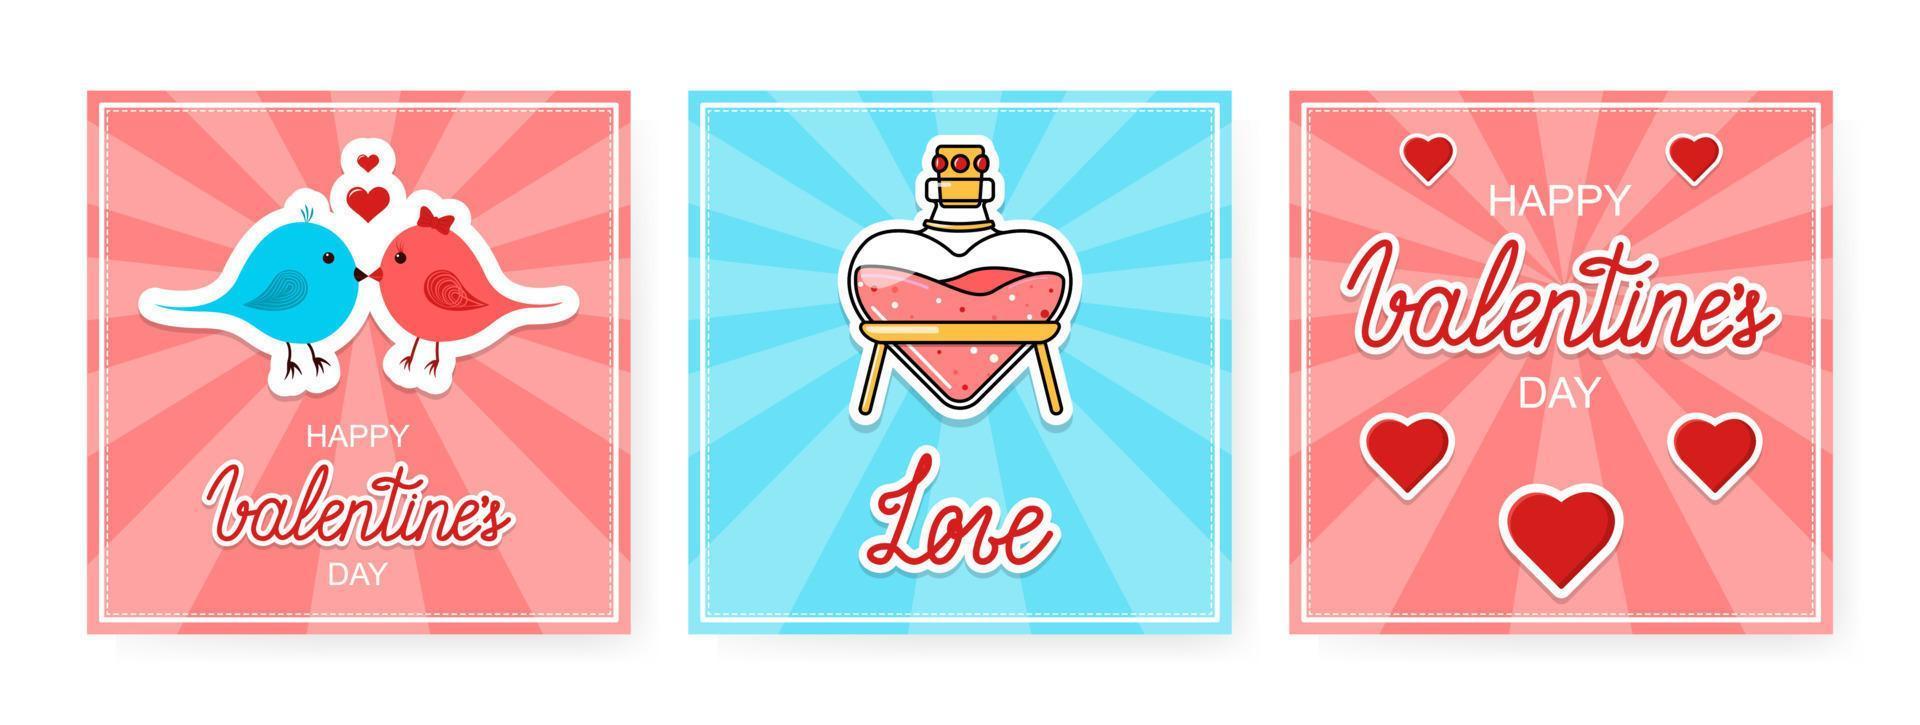 Vektor Happy Valentines Banner gesetzt. drei klassische quadratische postkarten für den 14. februar.